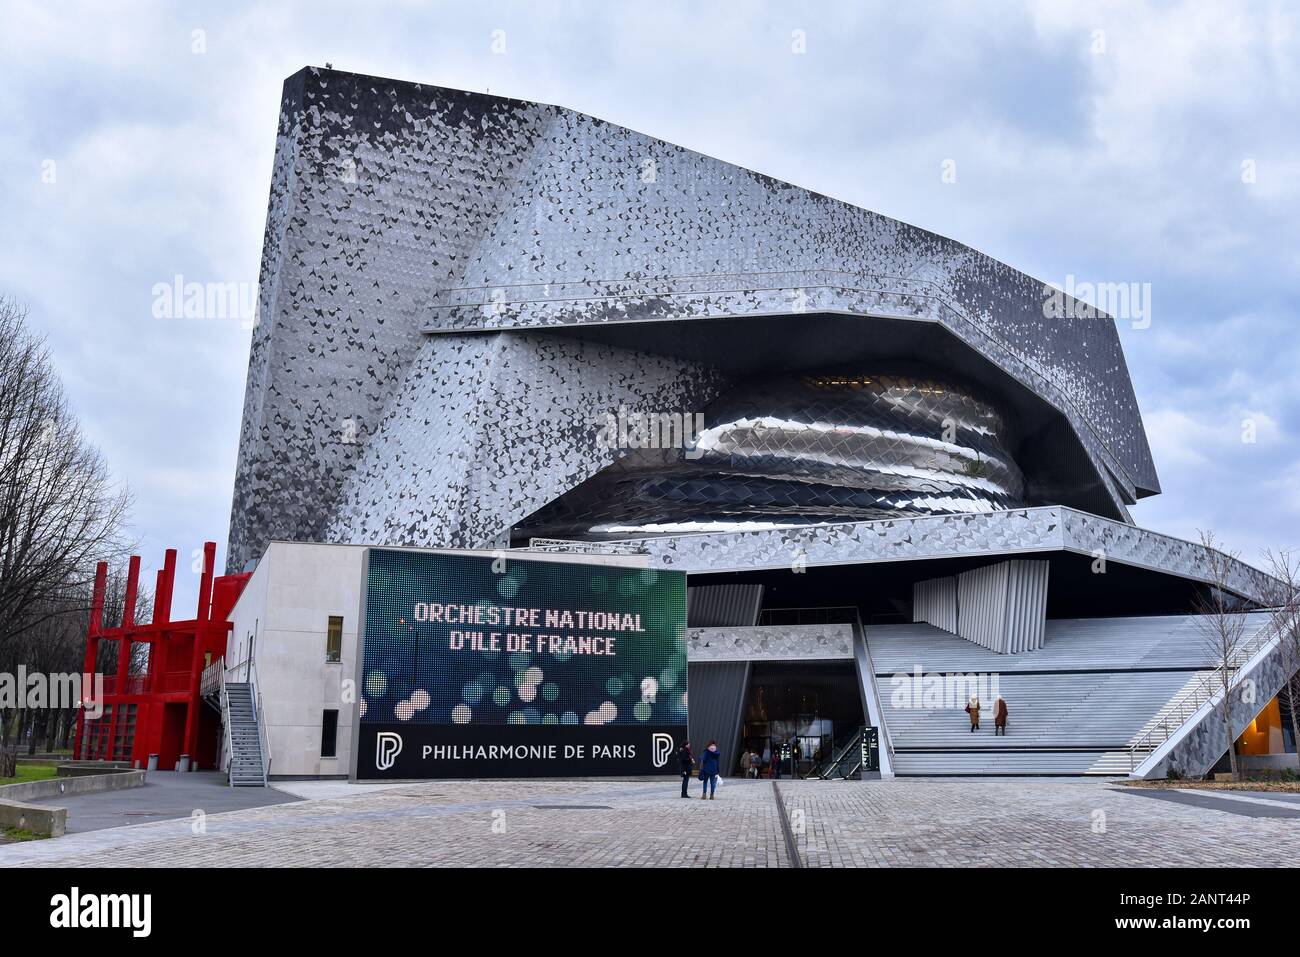 PARIS, FRANCE - 10 mars 2016 : Vue de face de la Philharmonie de Paris, un établissement culturel situé dans le Parc de la Villette. Banque D'Images